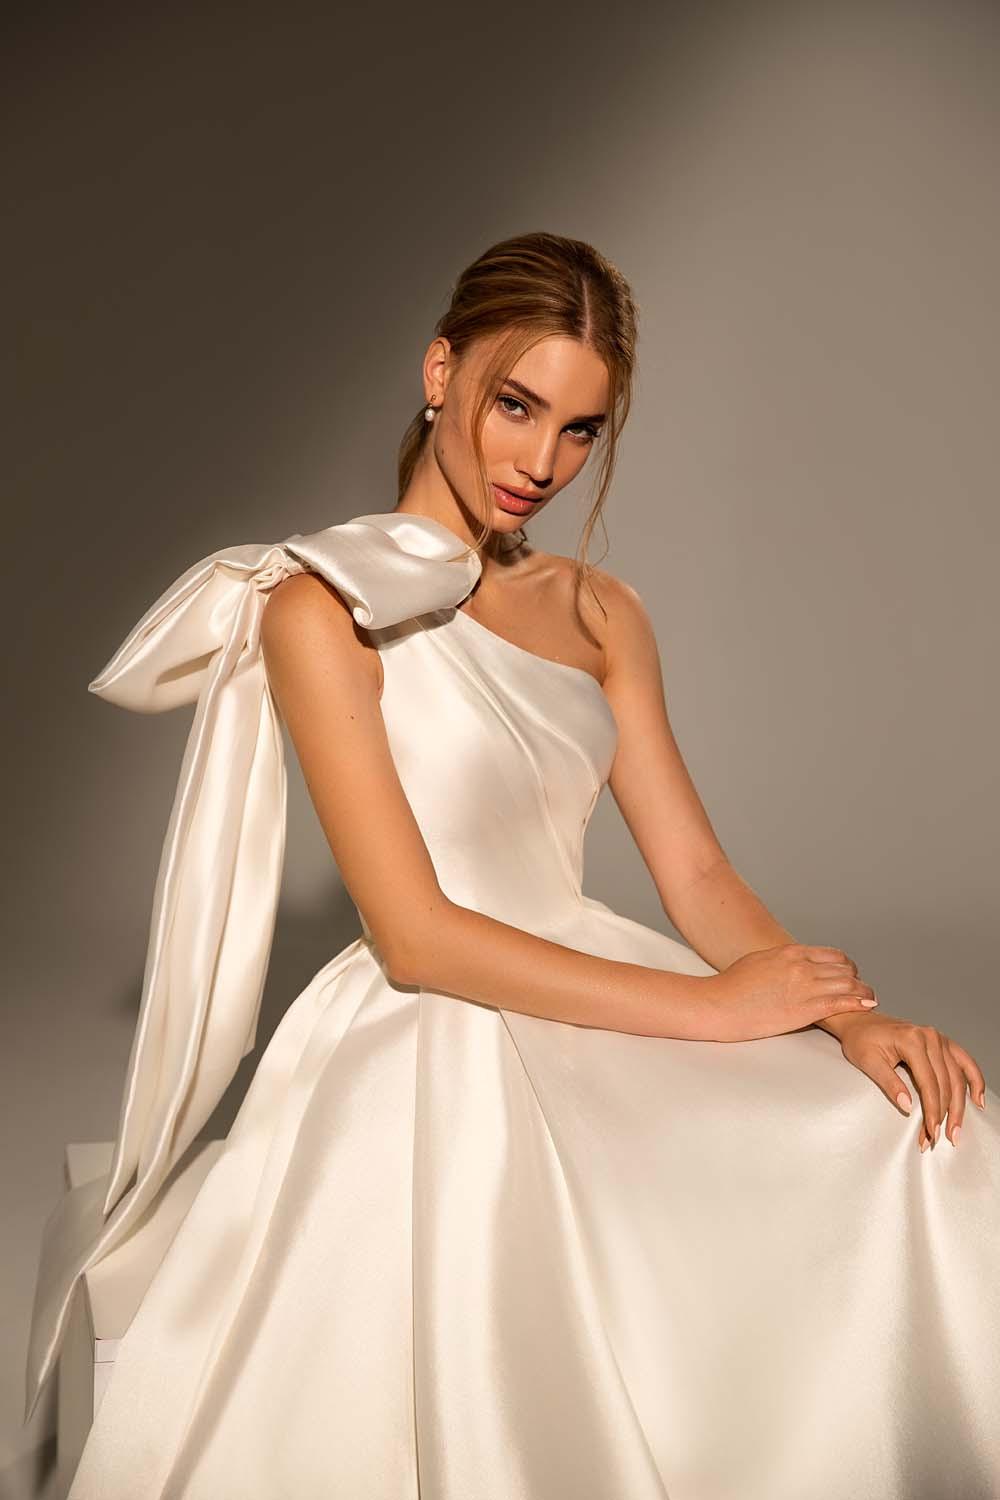 Estos son los 50 vestidos con moños para que no te puedes perder - bodas.com.mx